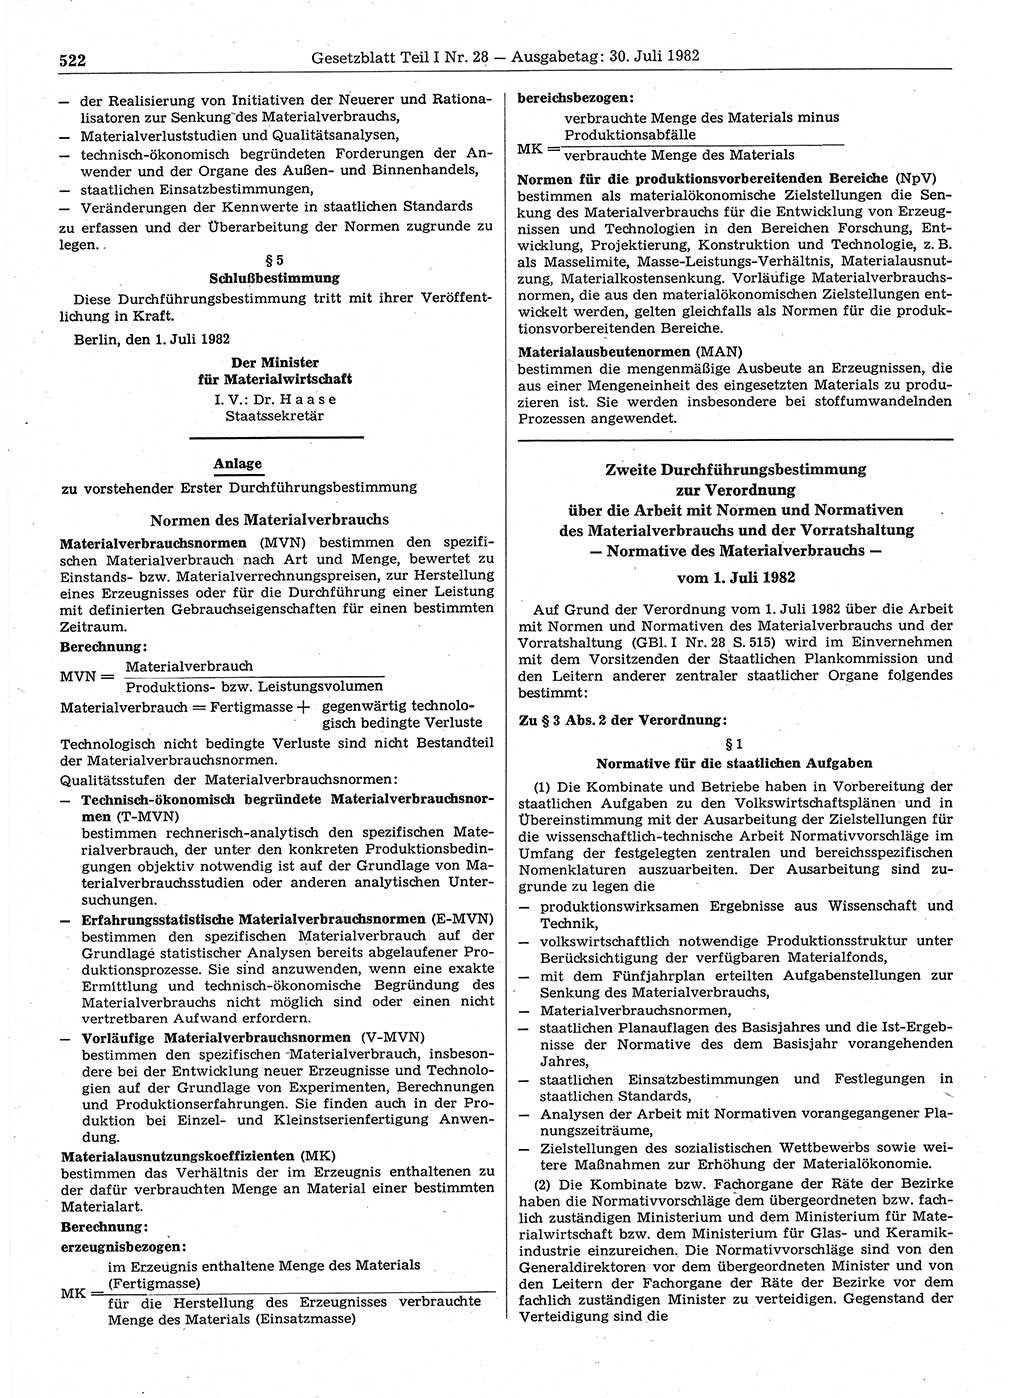 Gesetzblatt (GBl.) der Deutschen Demokratischen Republik (DDR) Teil Ⅰ 1982, Seite 522 (GBl. DDR Ⅰ 1982, S. 522)